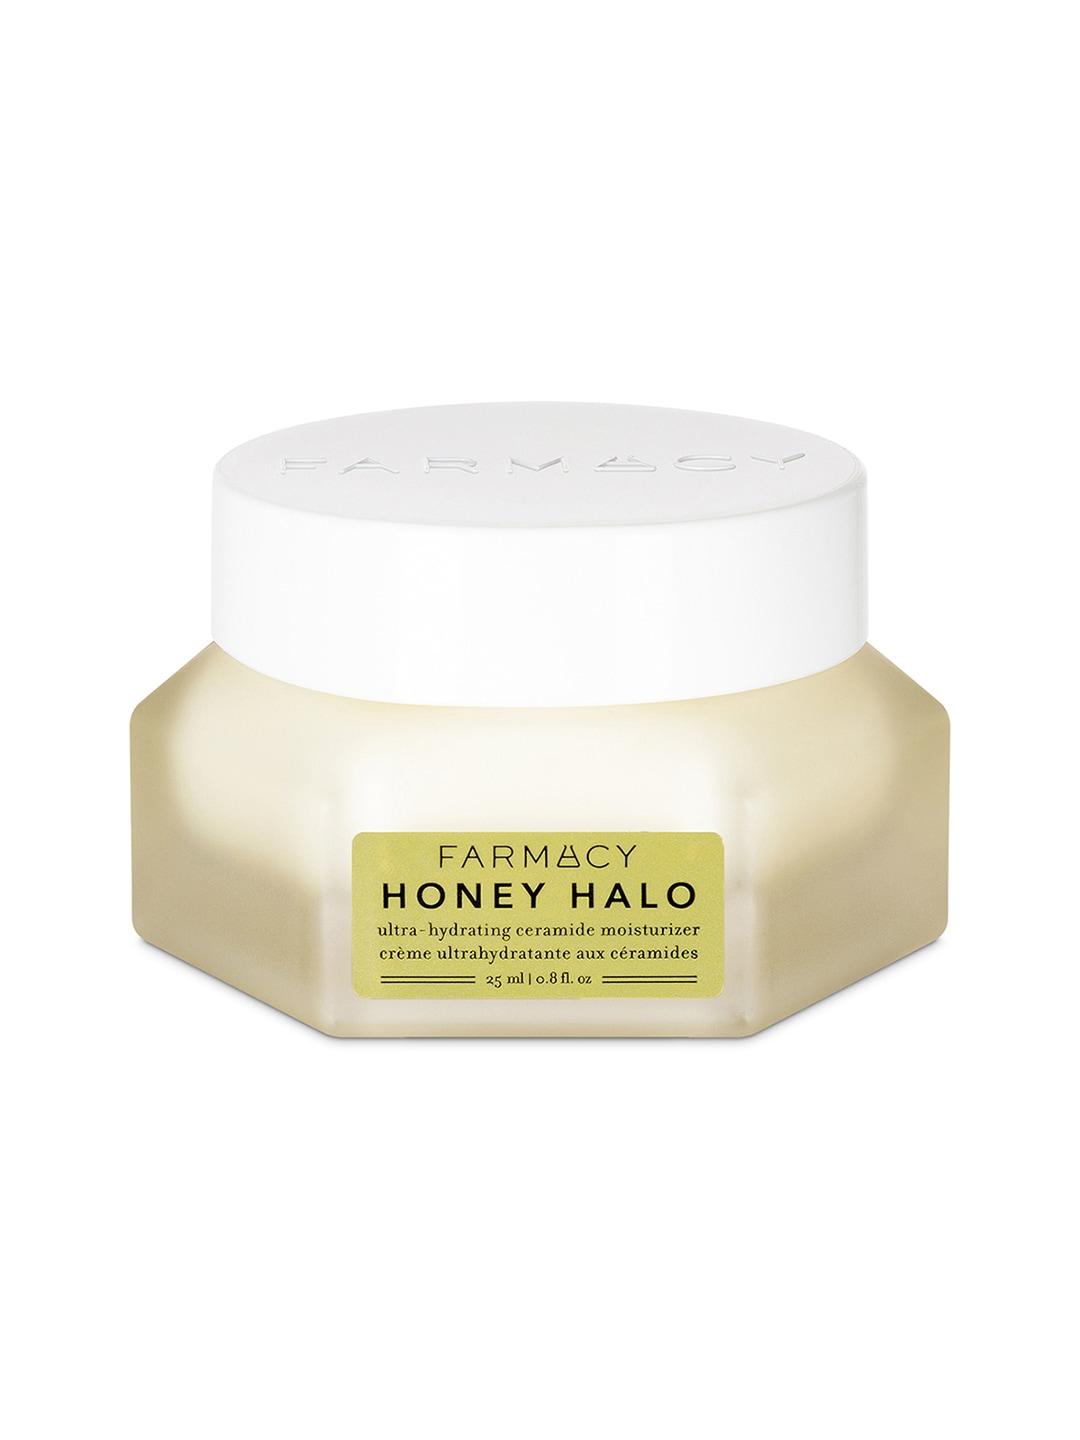 Farmacy Beauty Honey Halo Ultra Hydrating Ceramides Moisturizer - 25 ml